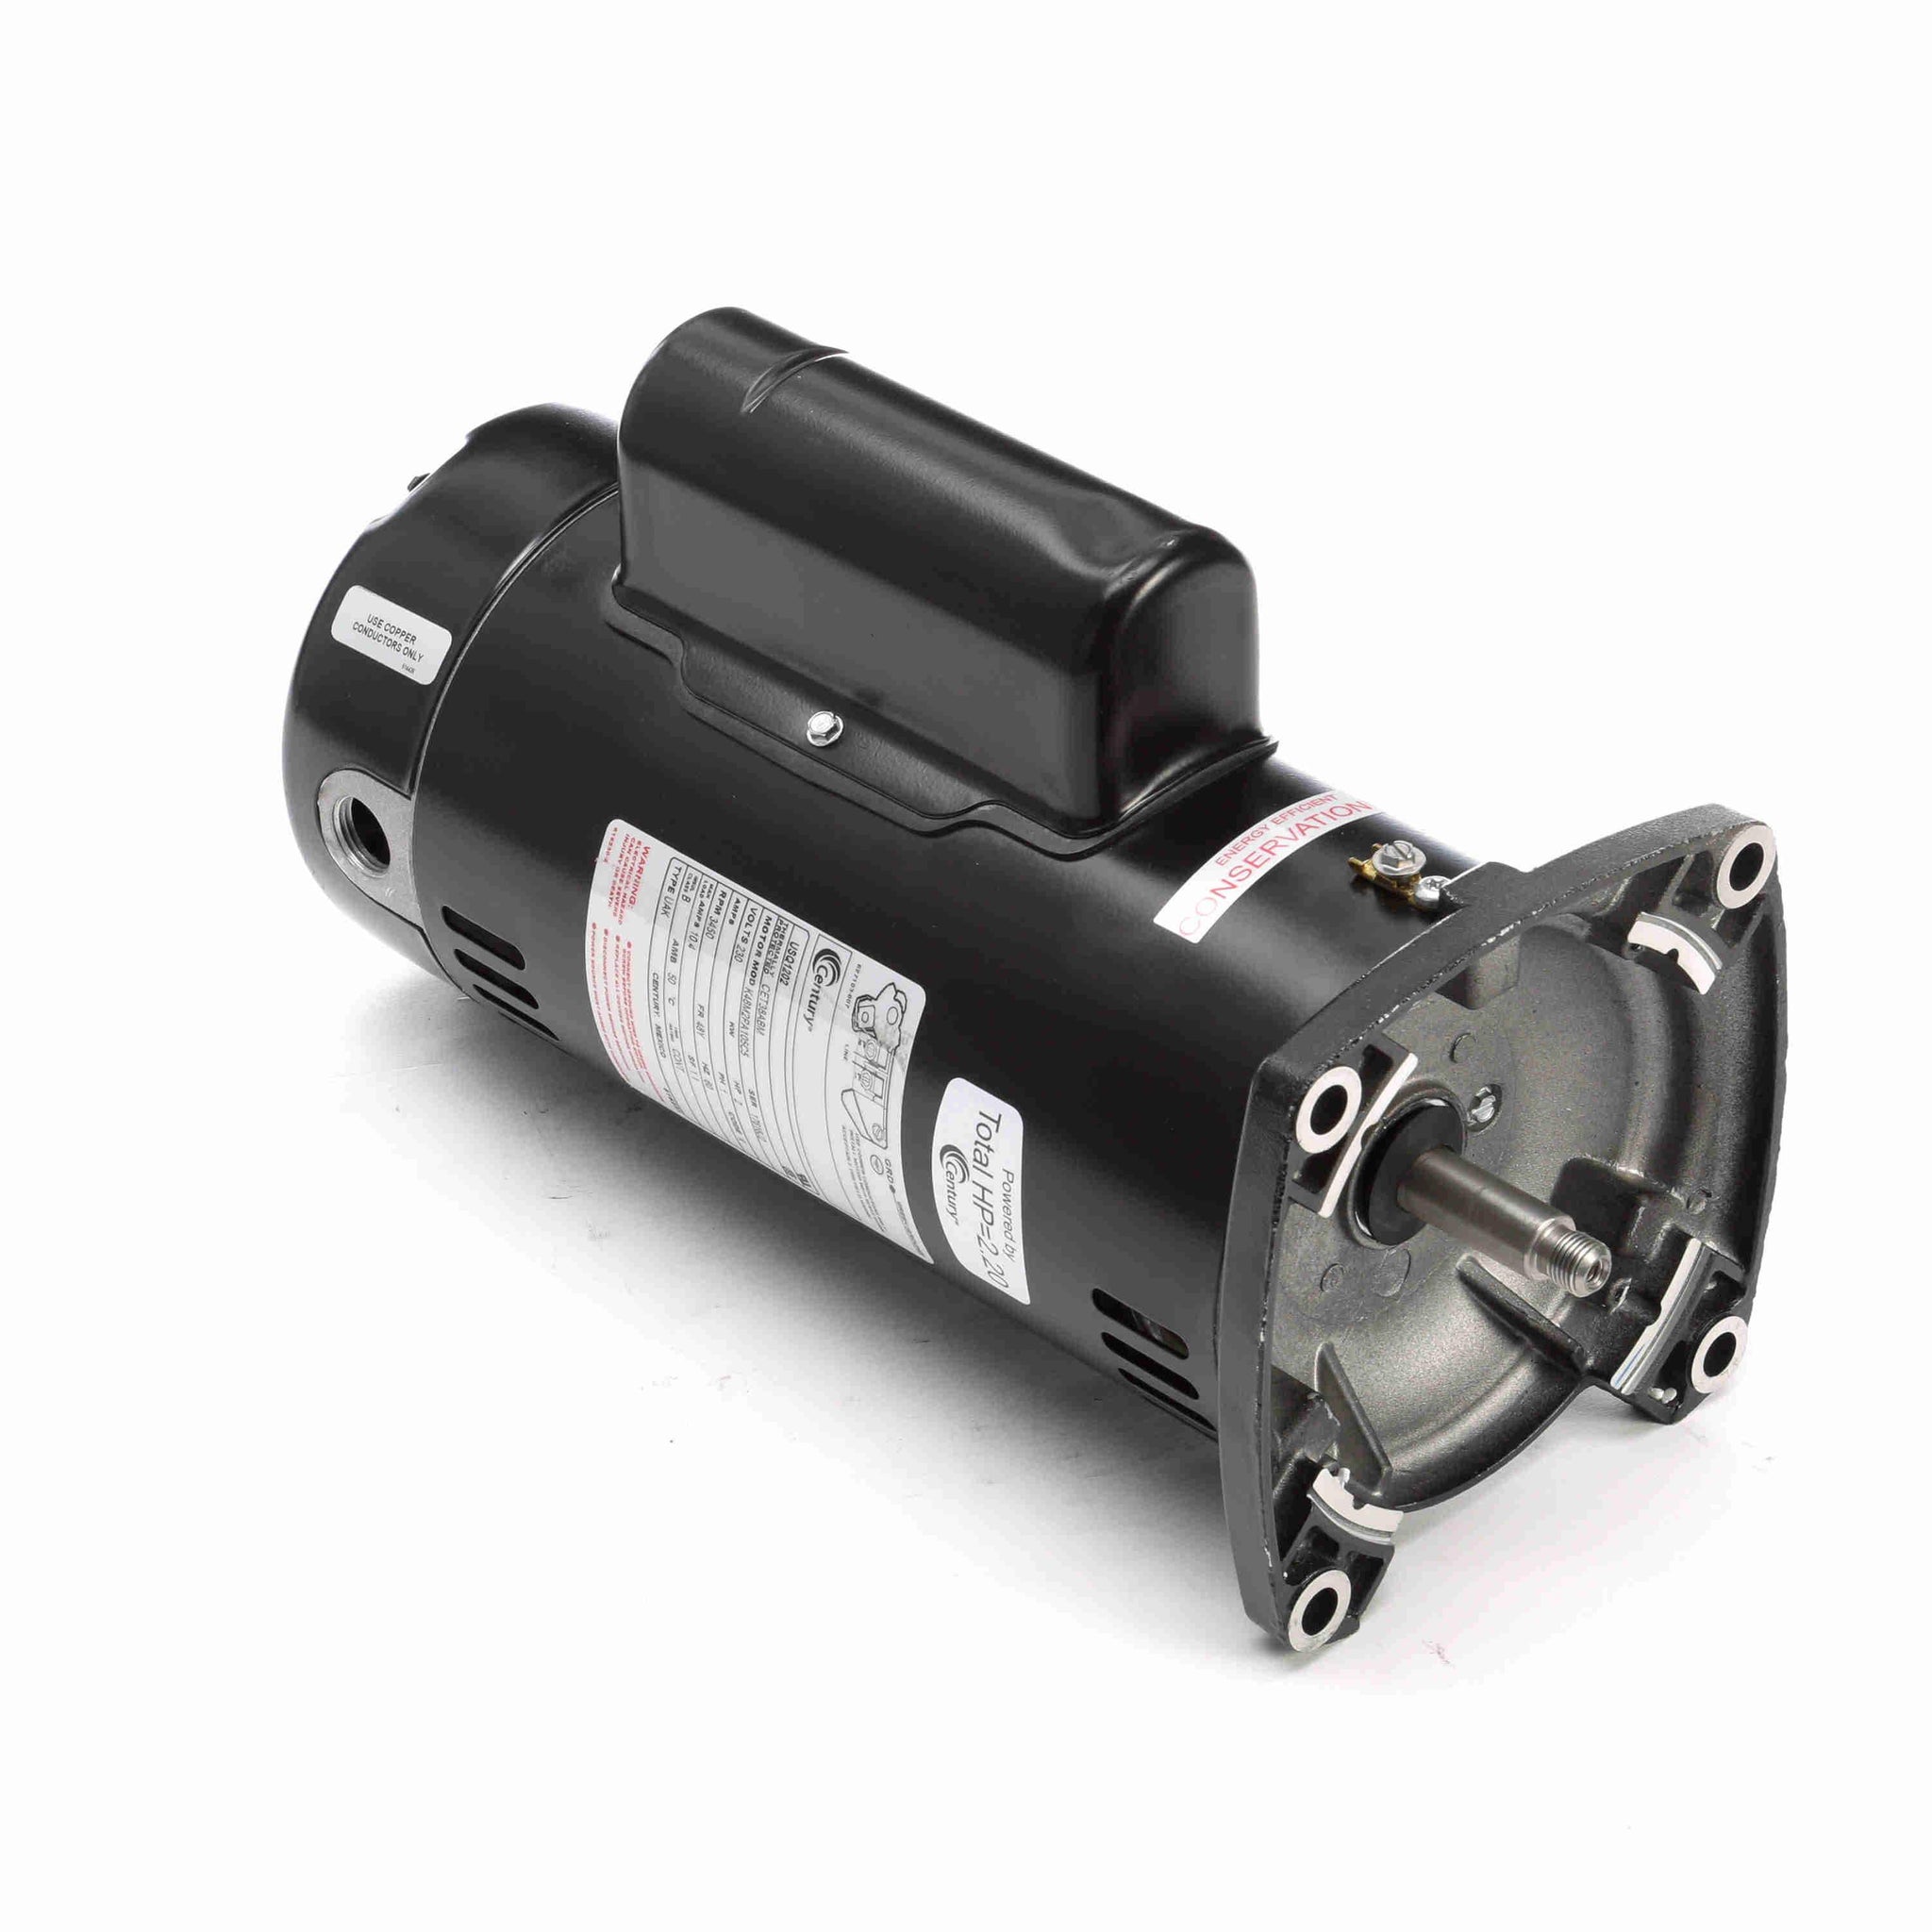 USQ1202 - 2 HP Pool Pump Motor, 1 phase, 3600 RPM, 230 V, 48Y Frame, ODP - Hardware & Moreee